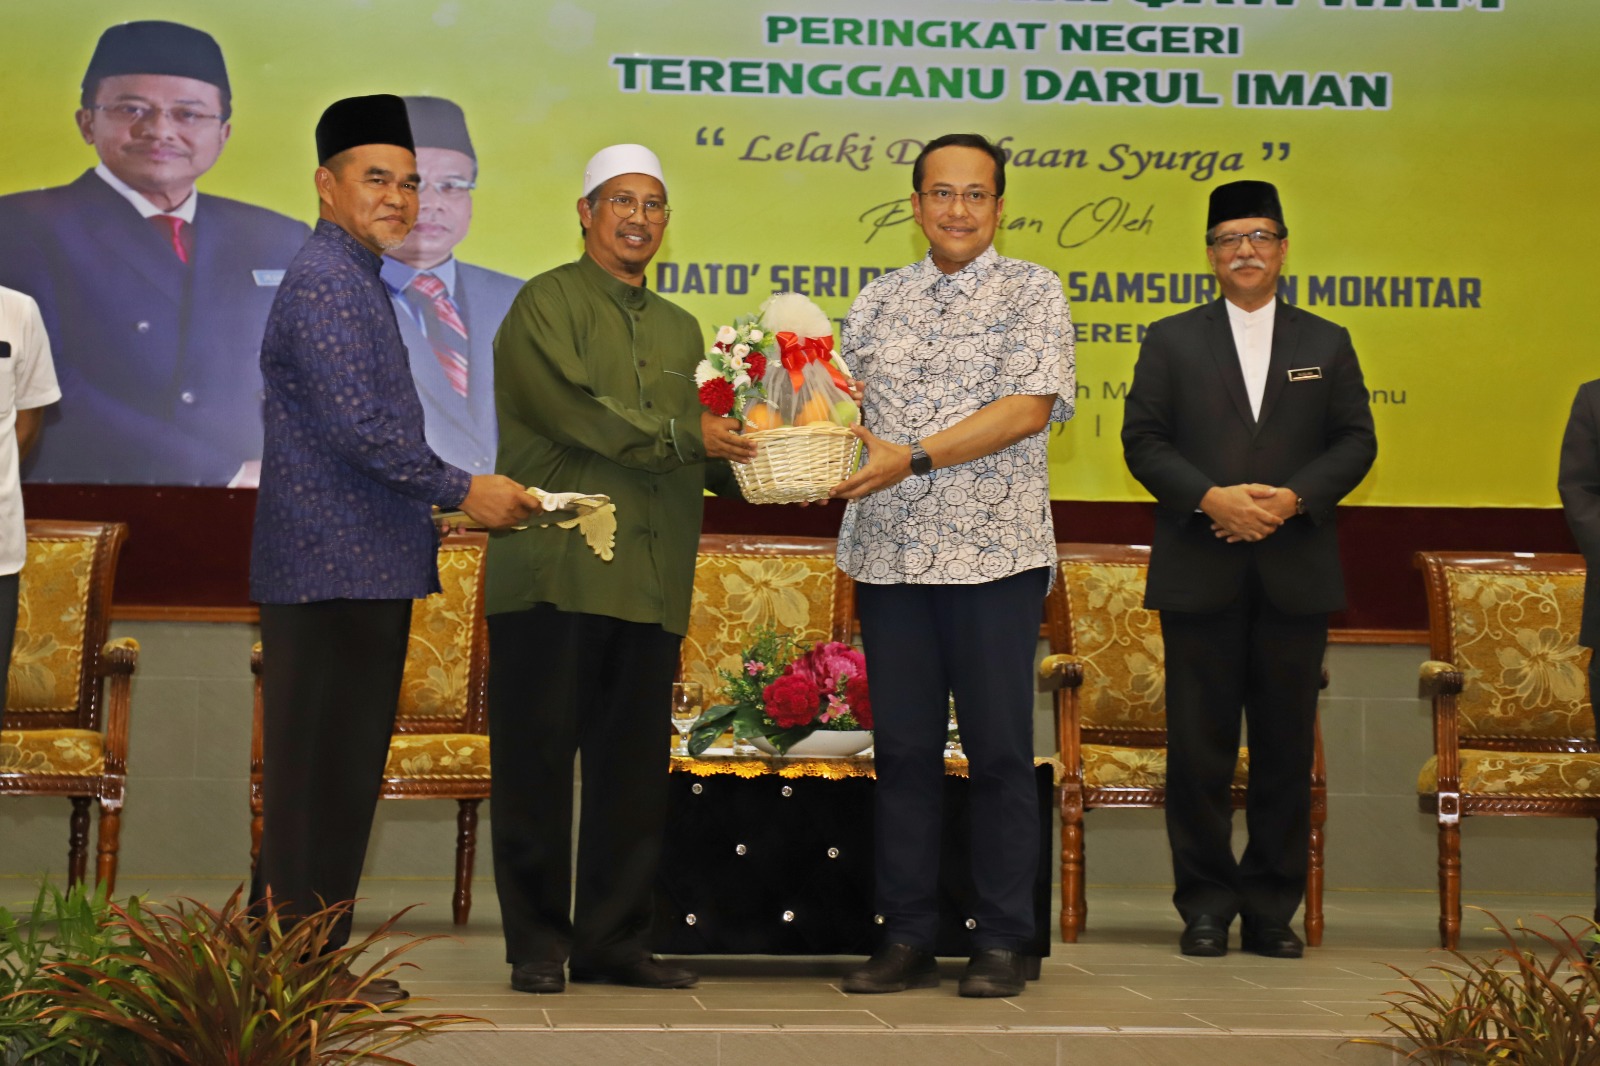 Seminar Lelaki Qawwam Peringkat Negeri Terengganu Darul Iman Lelaki Dambaan Syurga9